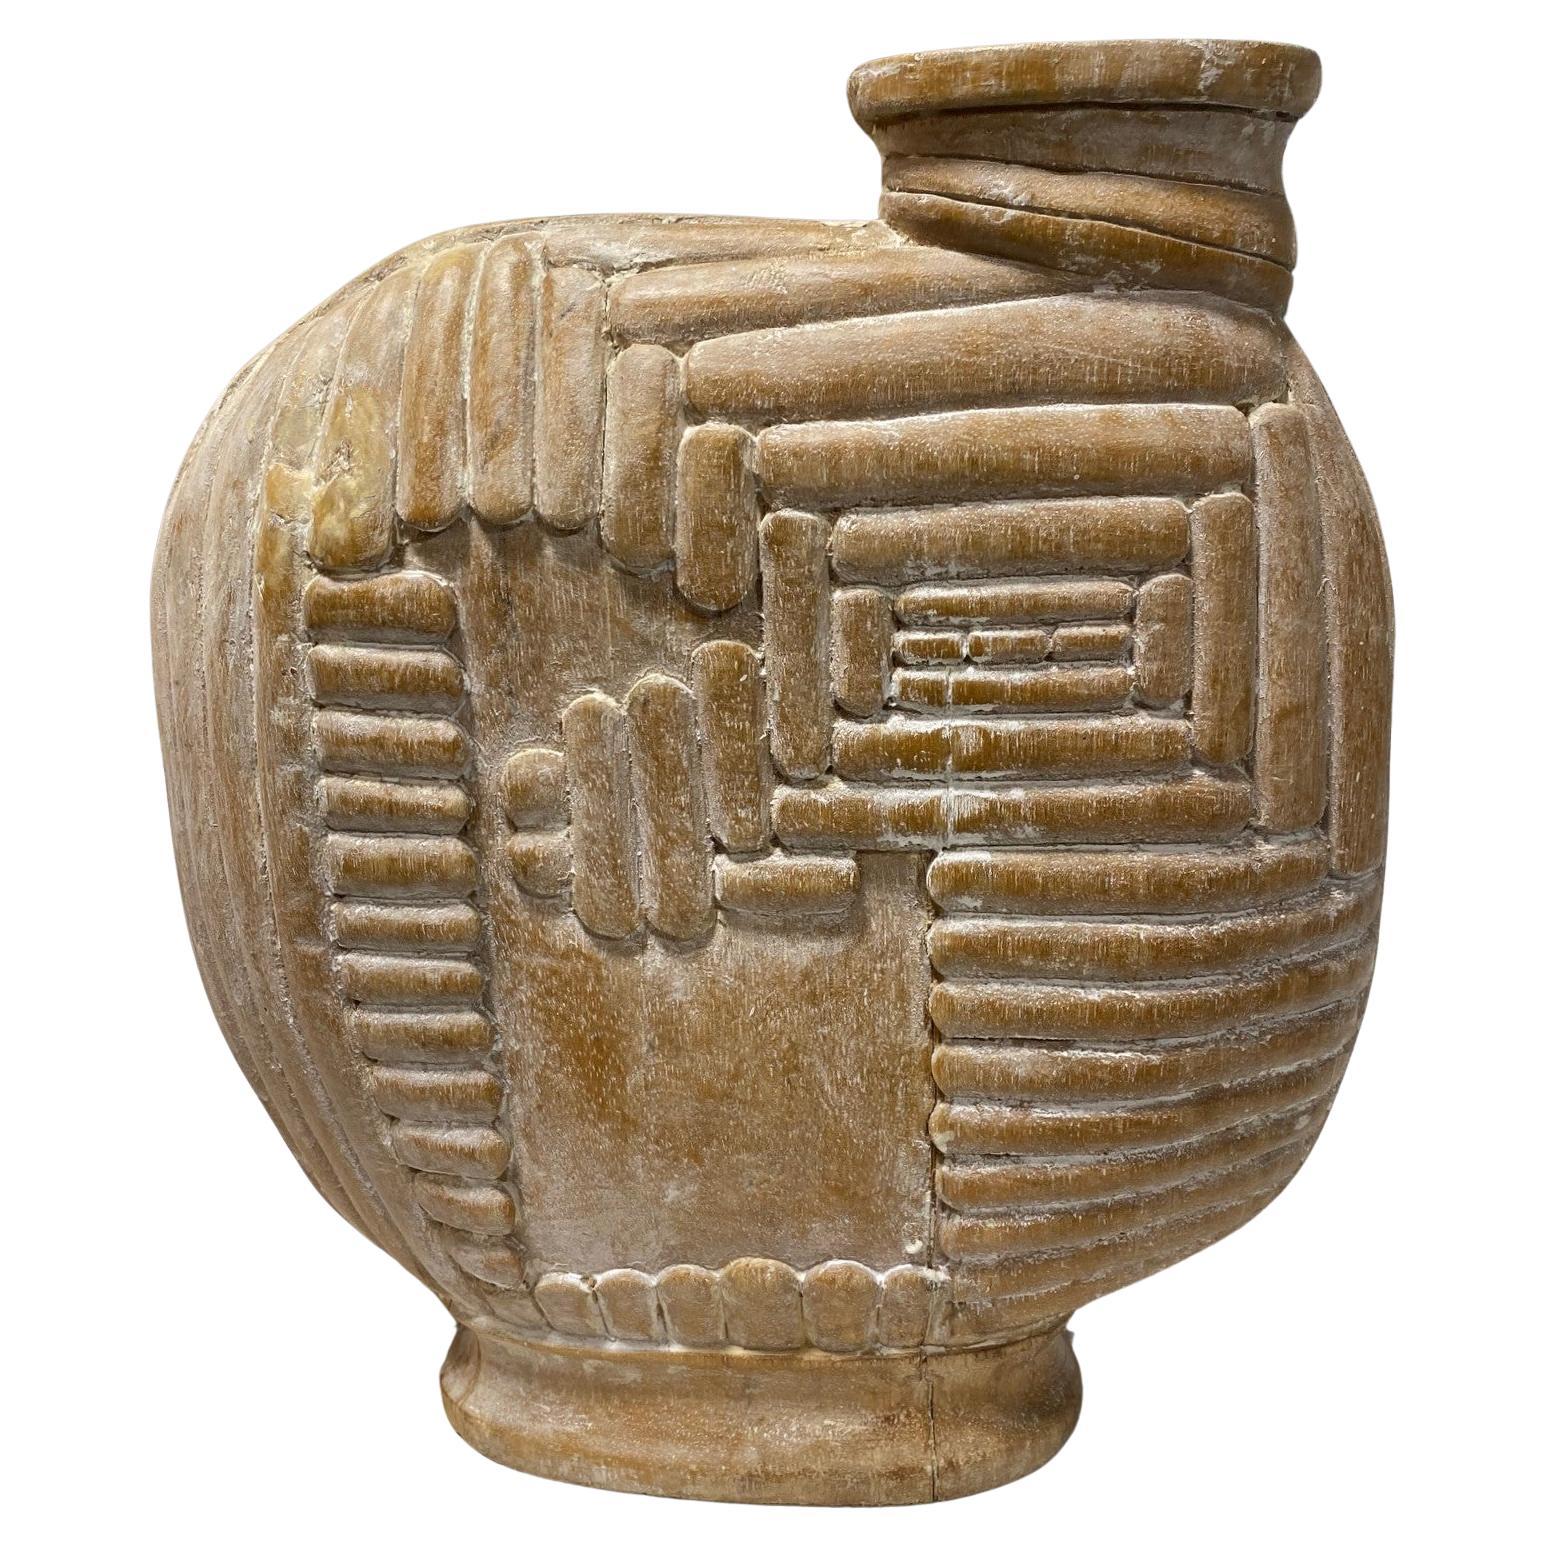 Large Organic Mid-Century Modern Natural Wood Carved Sculptural Art Vase Vessel For Sale